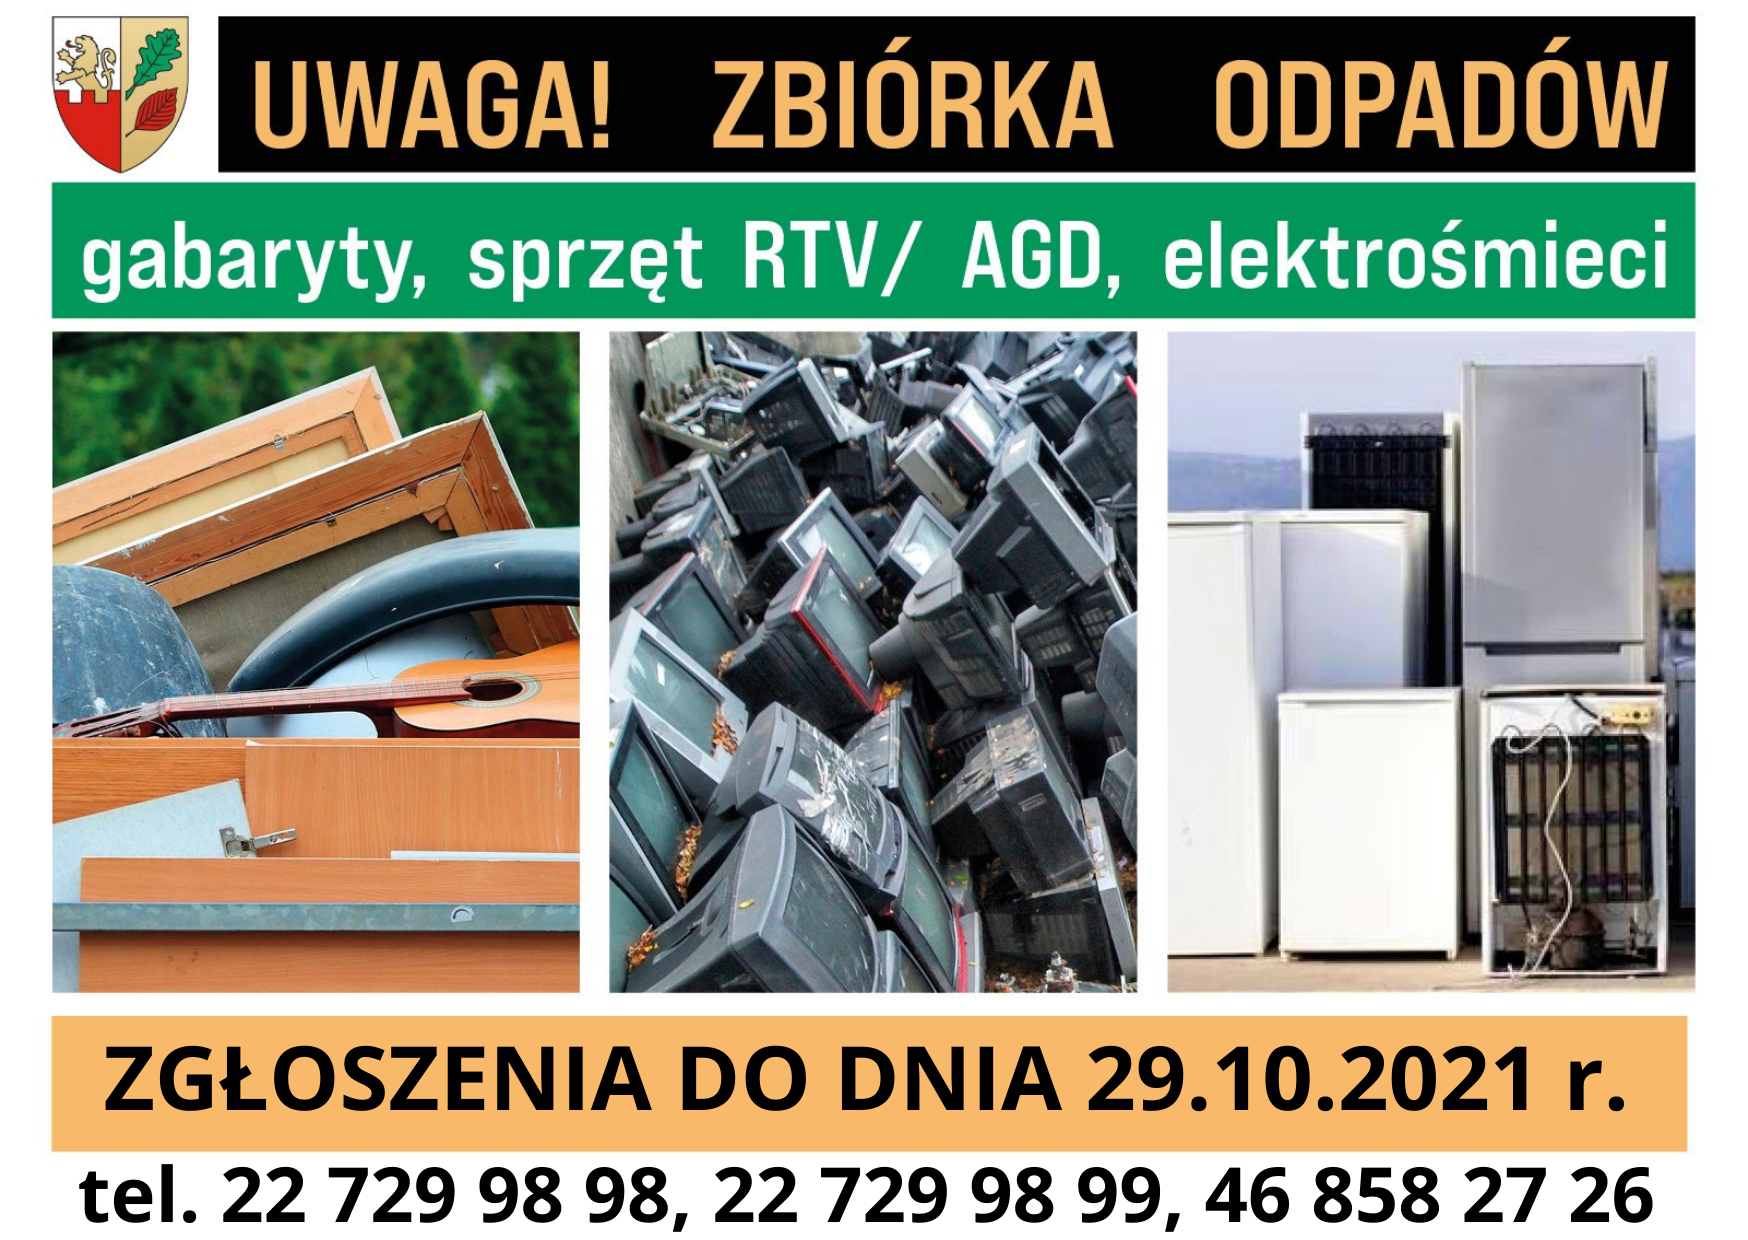 Odbiór gabarytów, zużytych sprzętów RTV/AGD oraz elektrośmieci